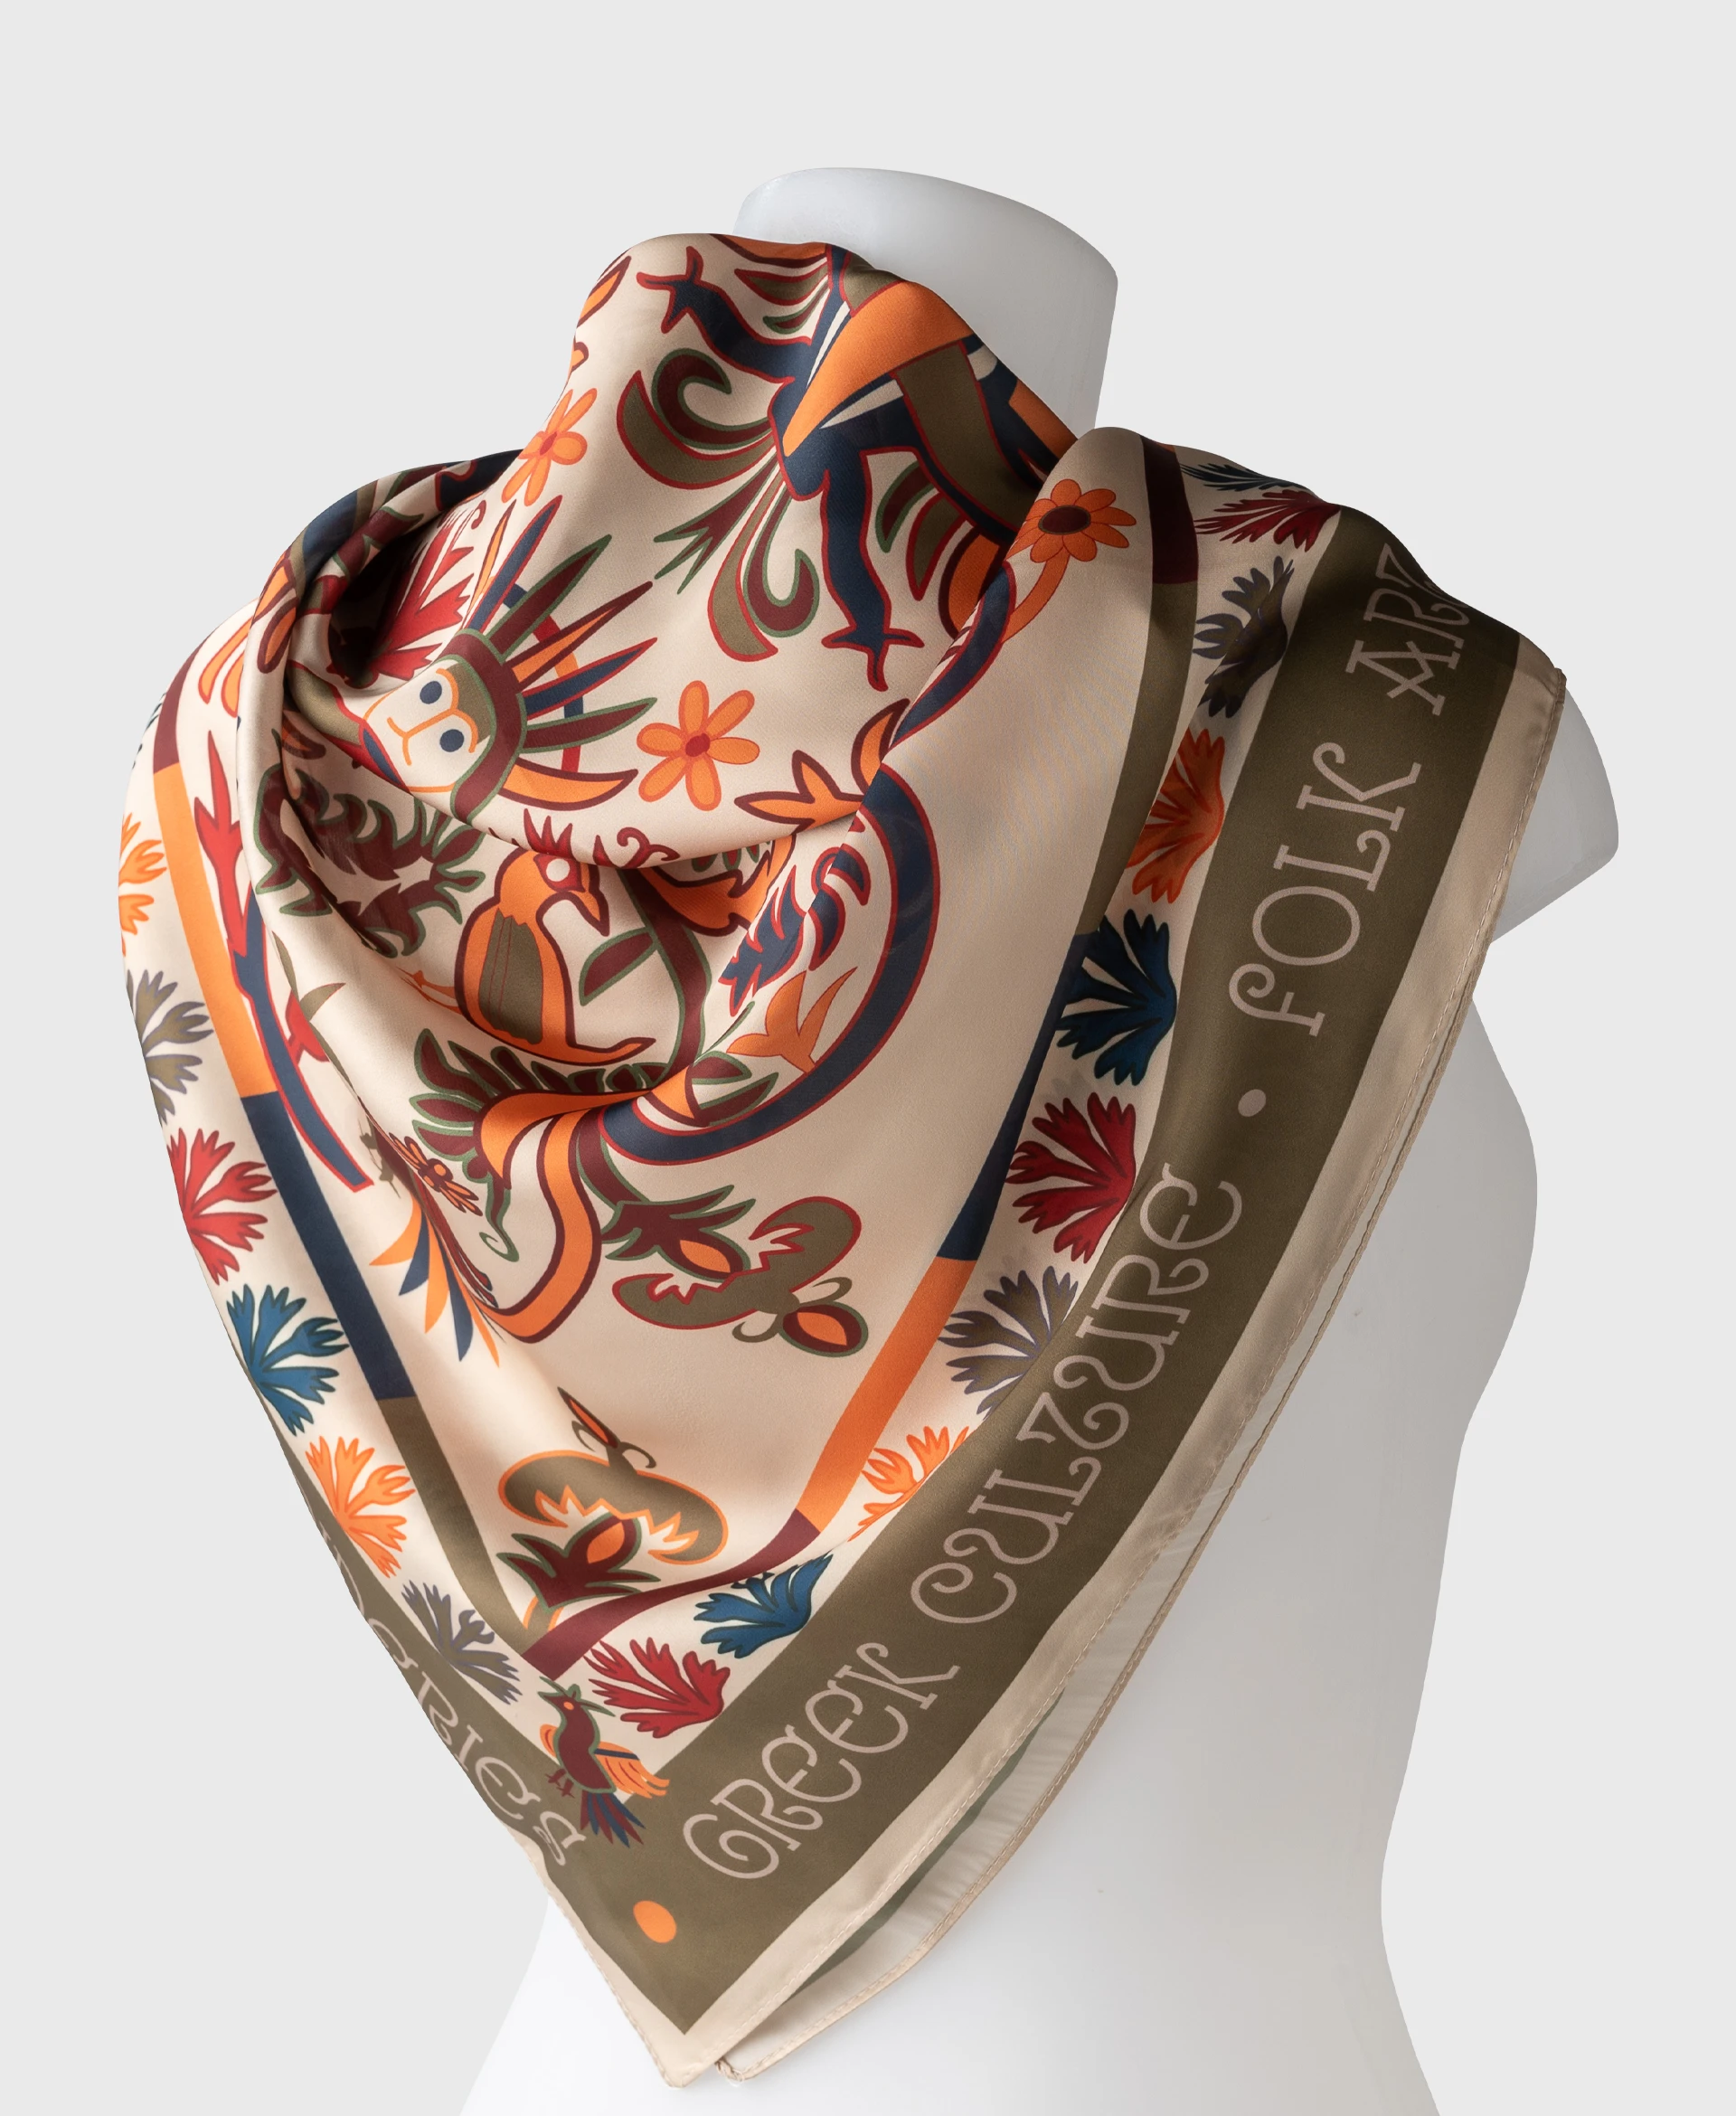 skyros island folk art ancient silk cotton scarf